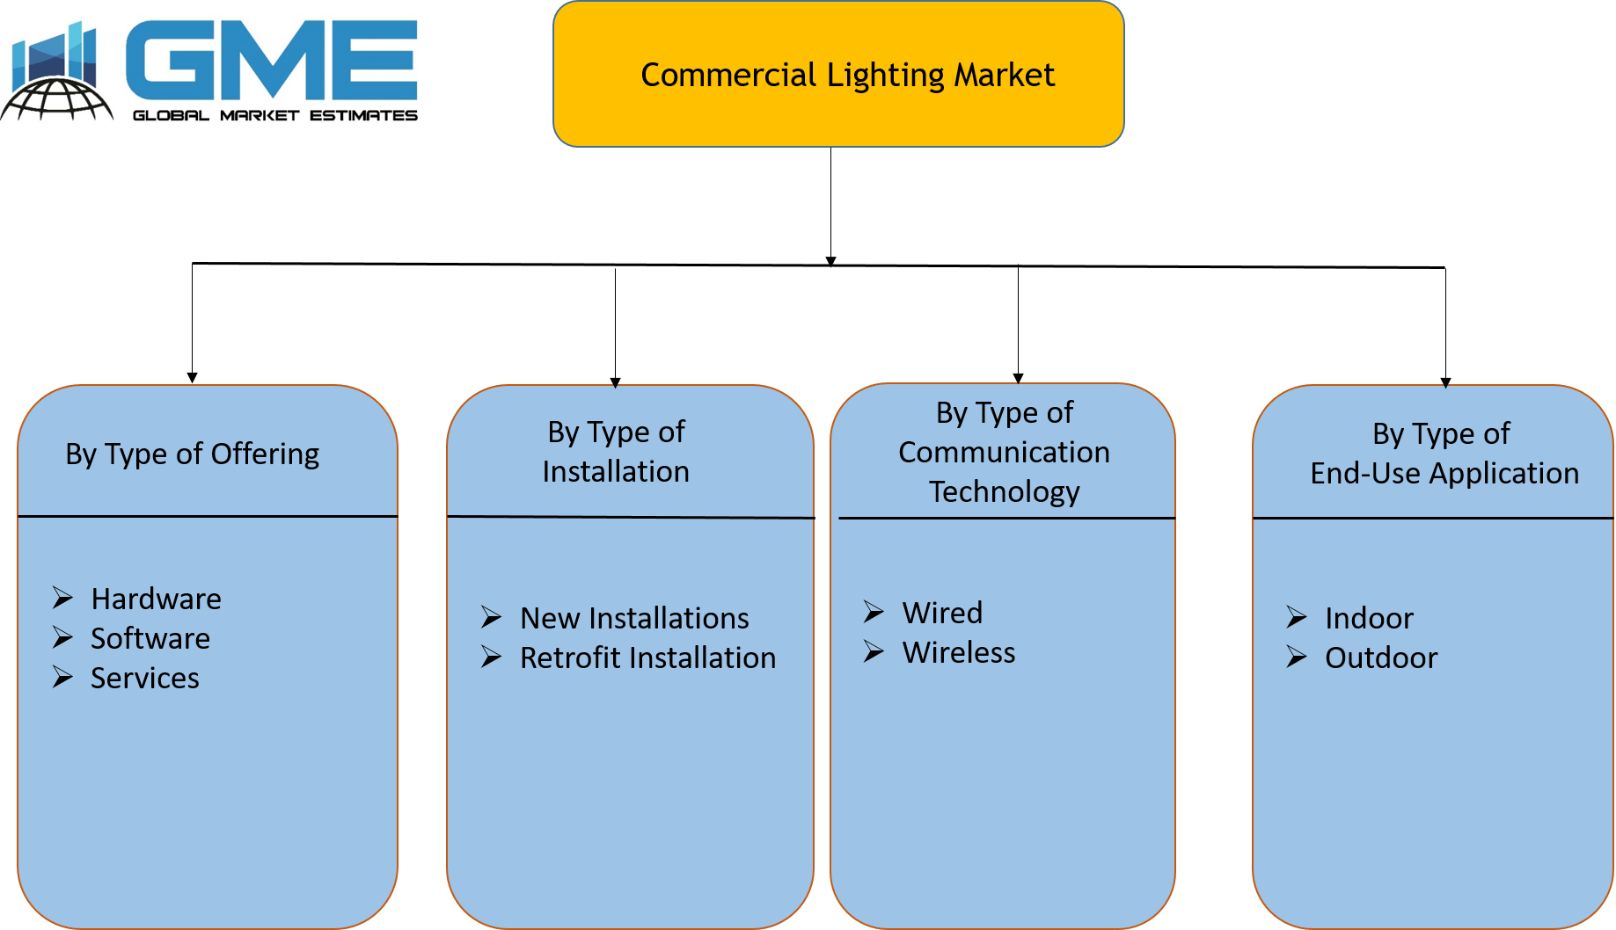 Commercial Lighting Market Segmentation